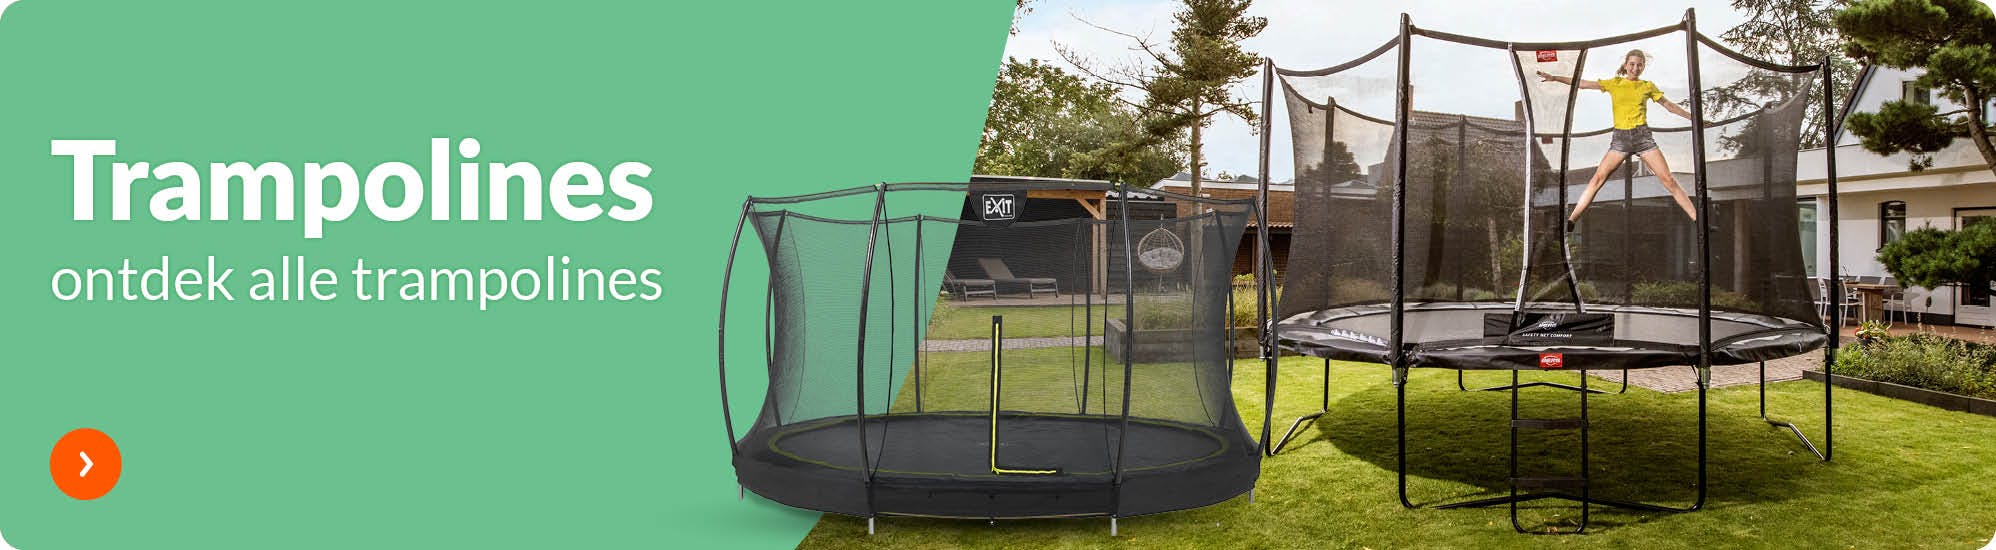 Tijd Sluit een verzekering af proza Trampoline kopen? Ontdek alle trampolines op Fun.be